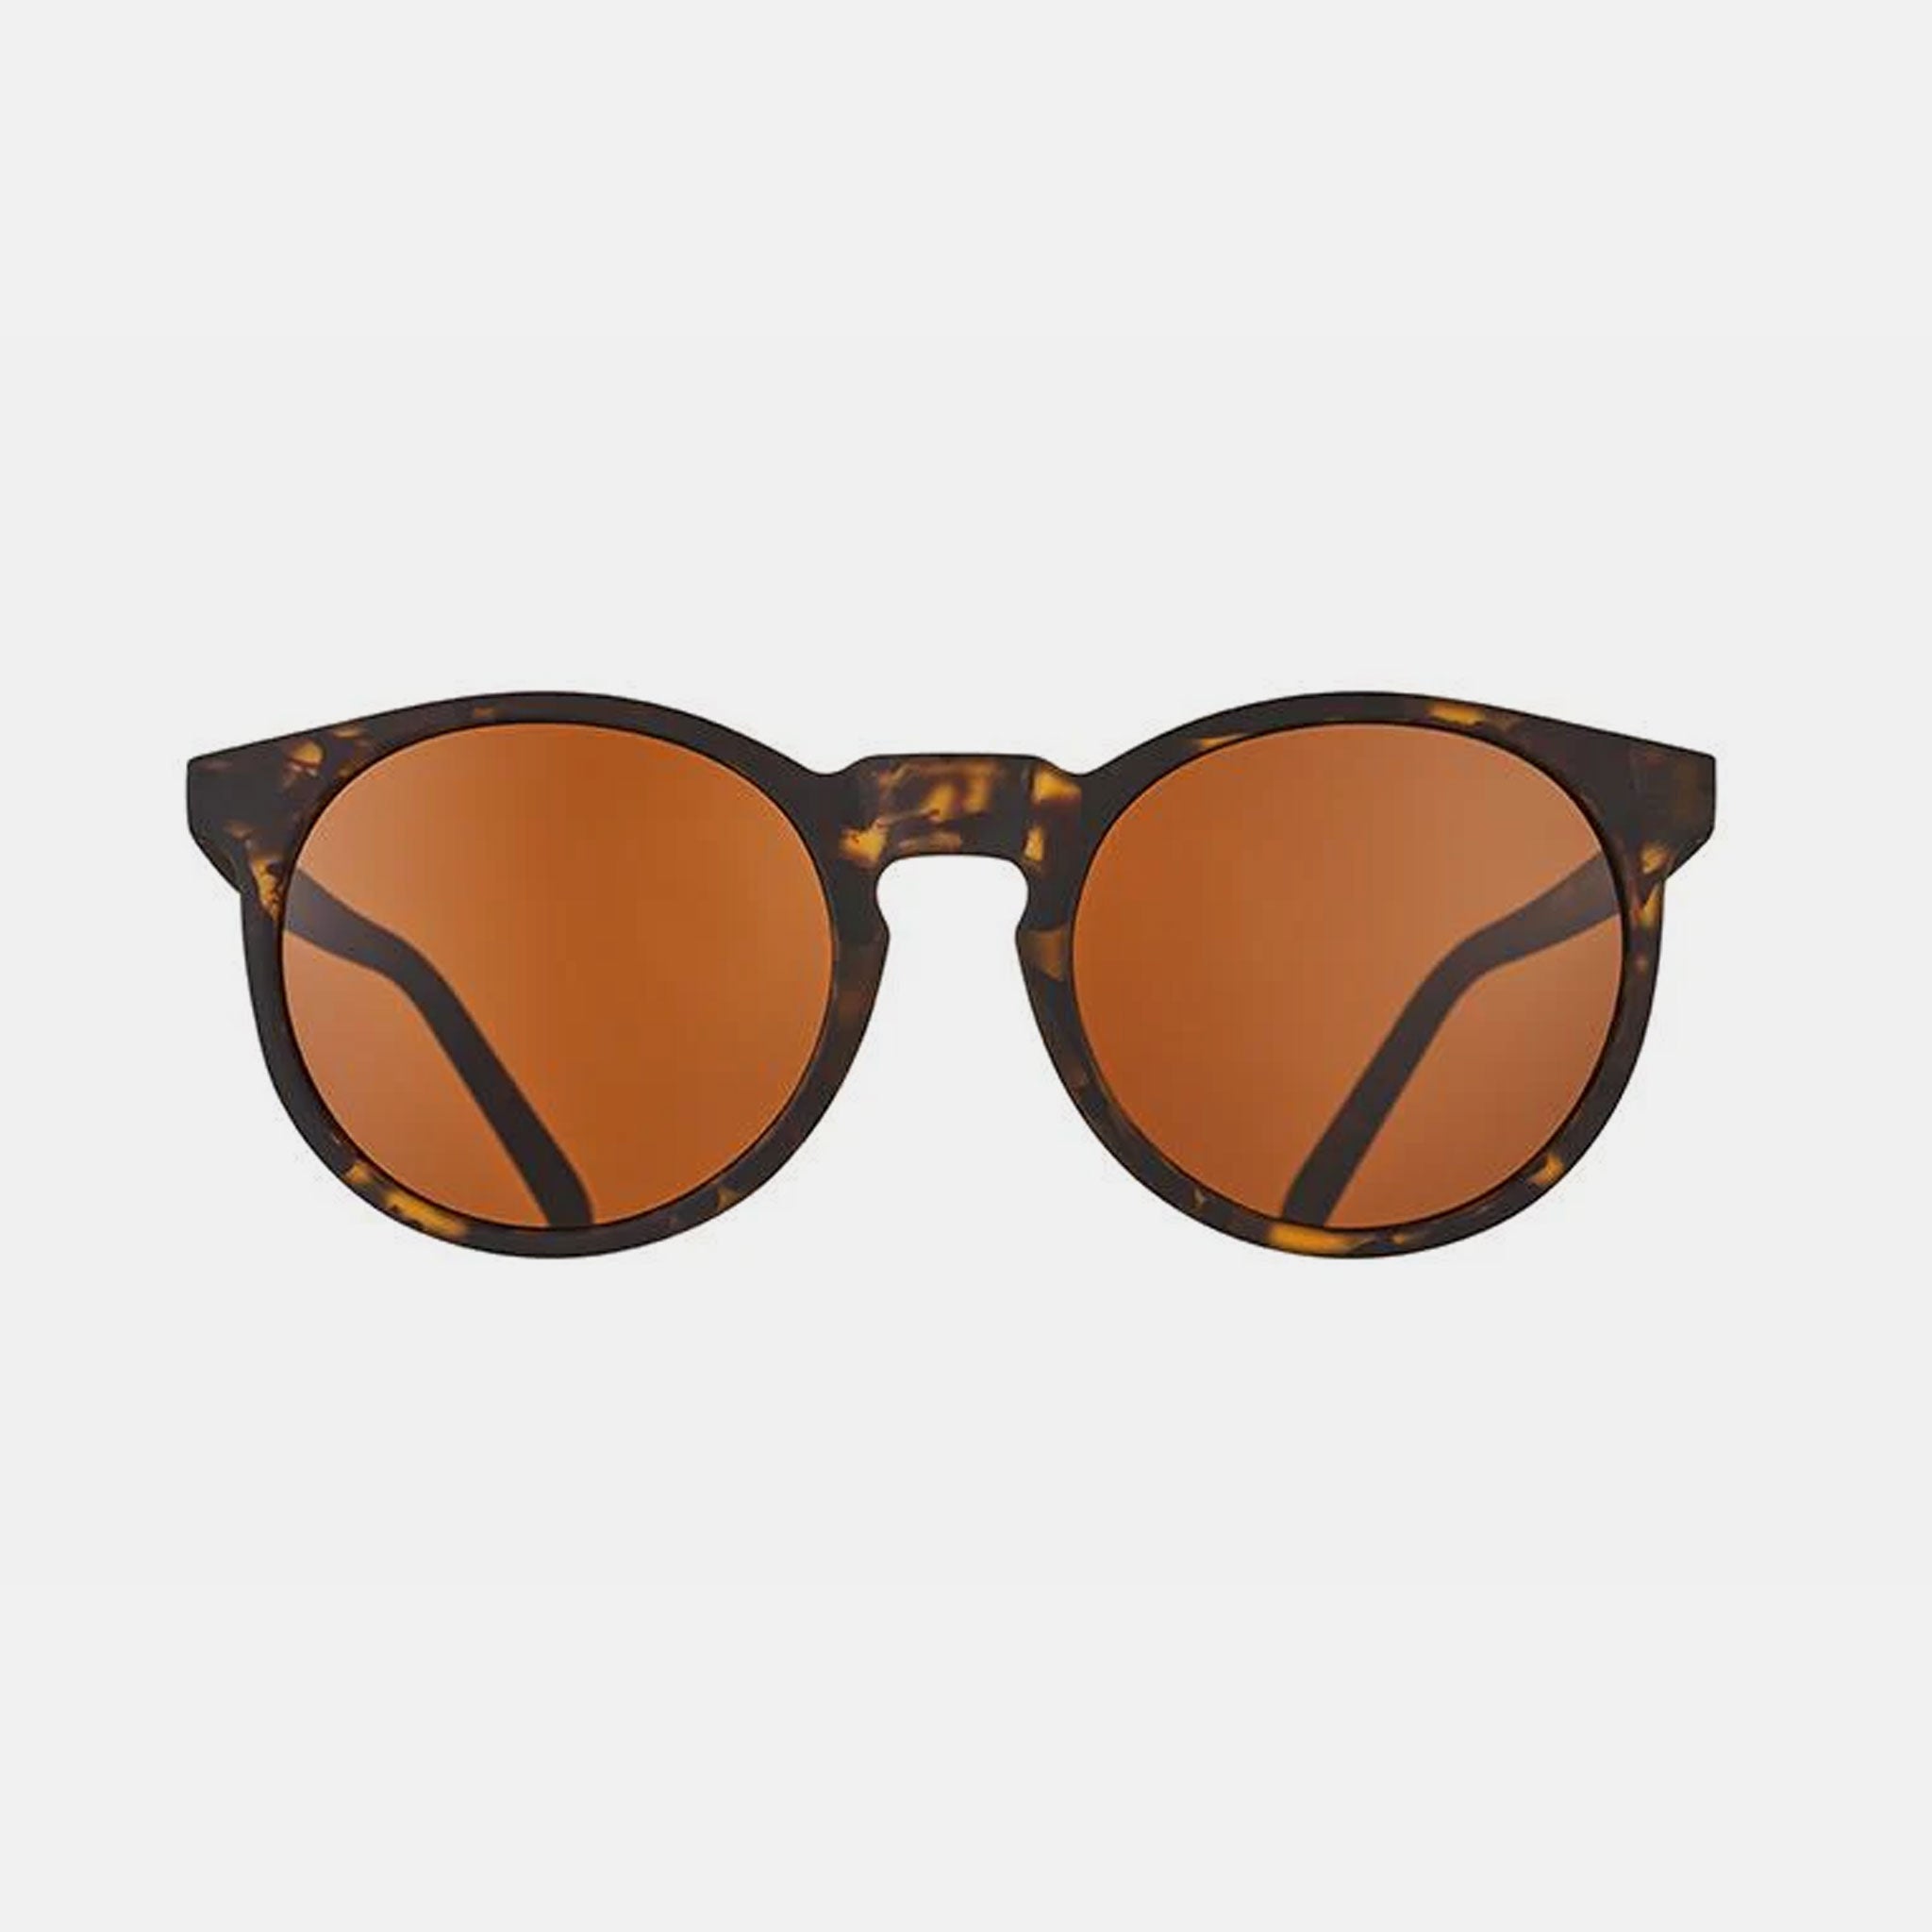 Goodr Tortoiseshell Sunglasses - Nine Dollar Pour Over